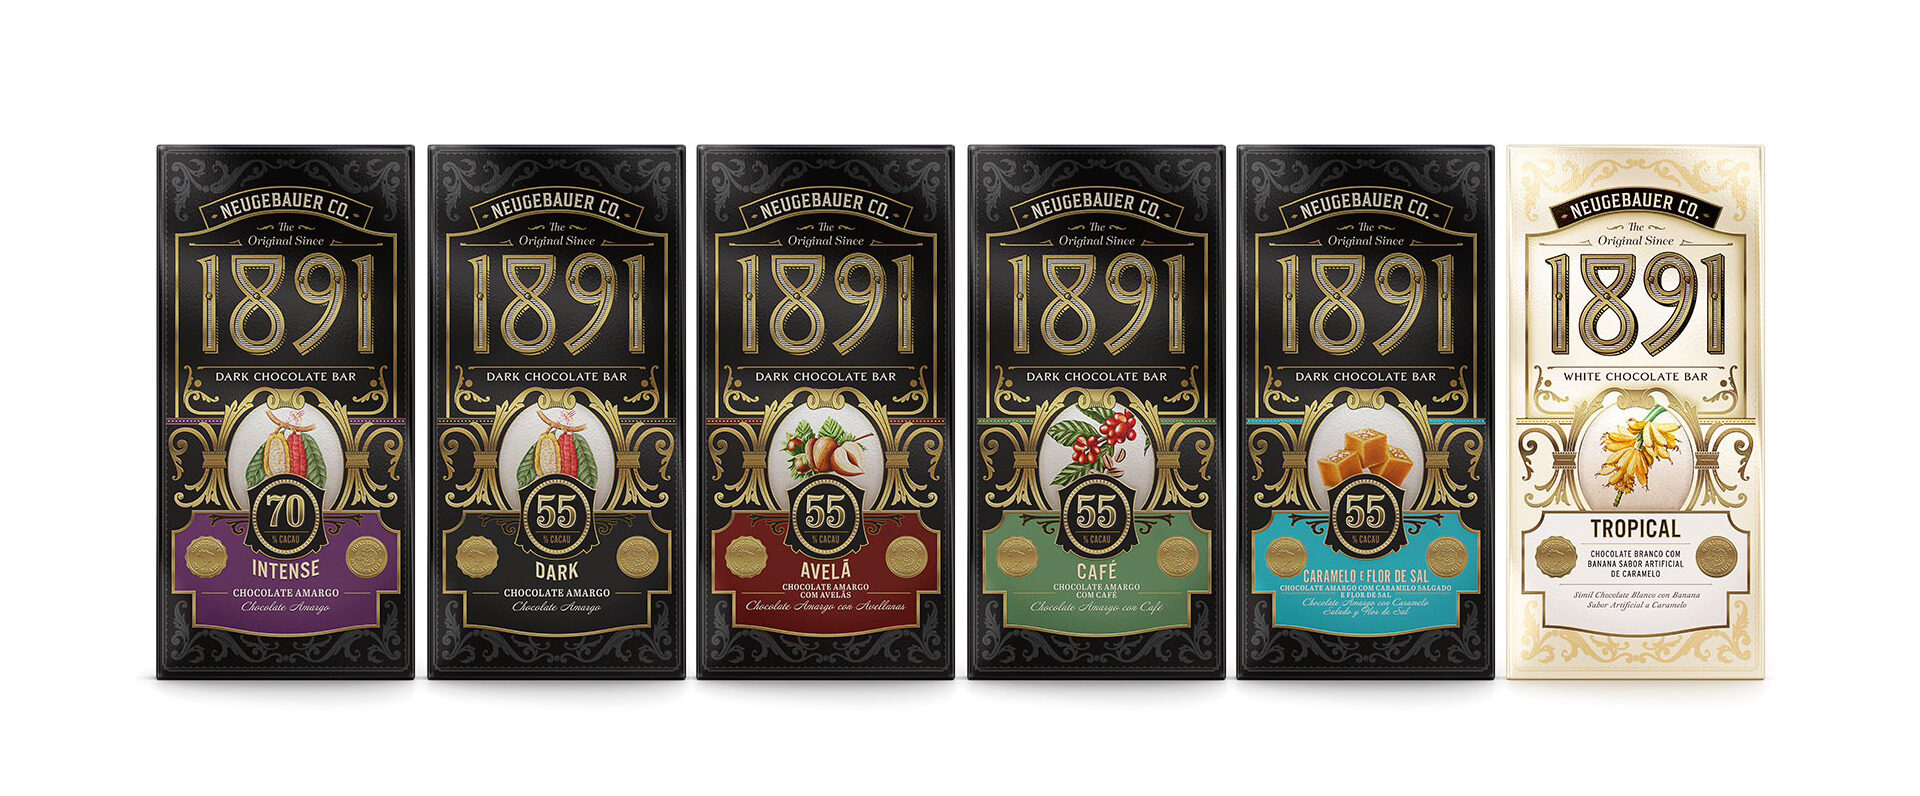 1891: linha premium da Neugebauer atualiza identidade visual e apresenta três novos sabores